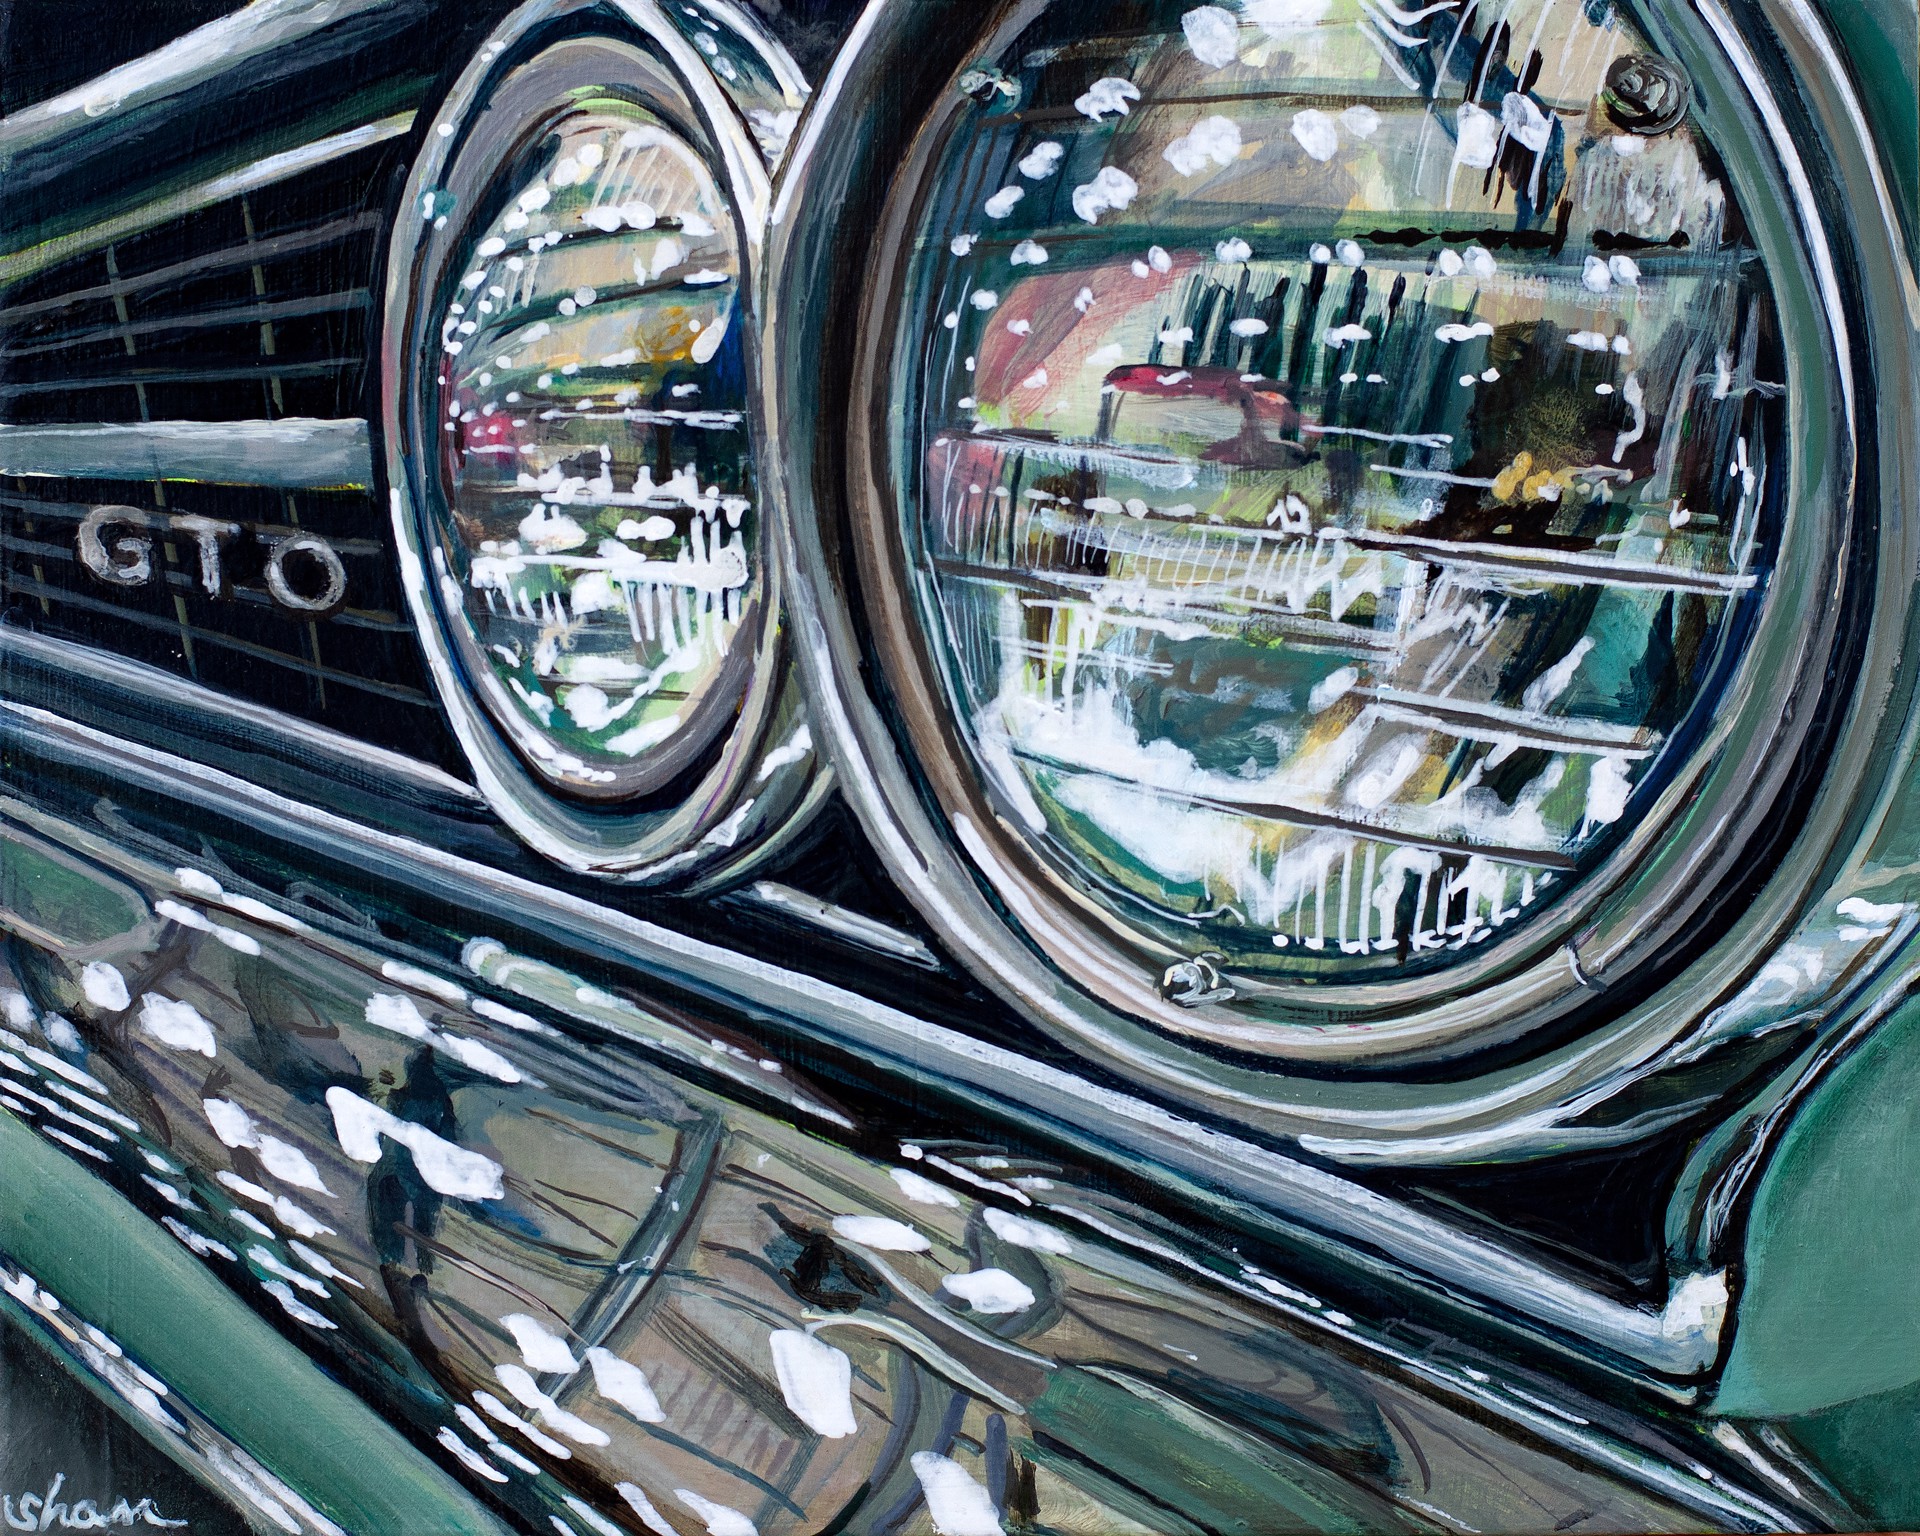 1964 Pinehurst Pontiac GTO by Shan Fannin